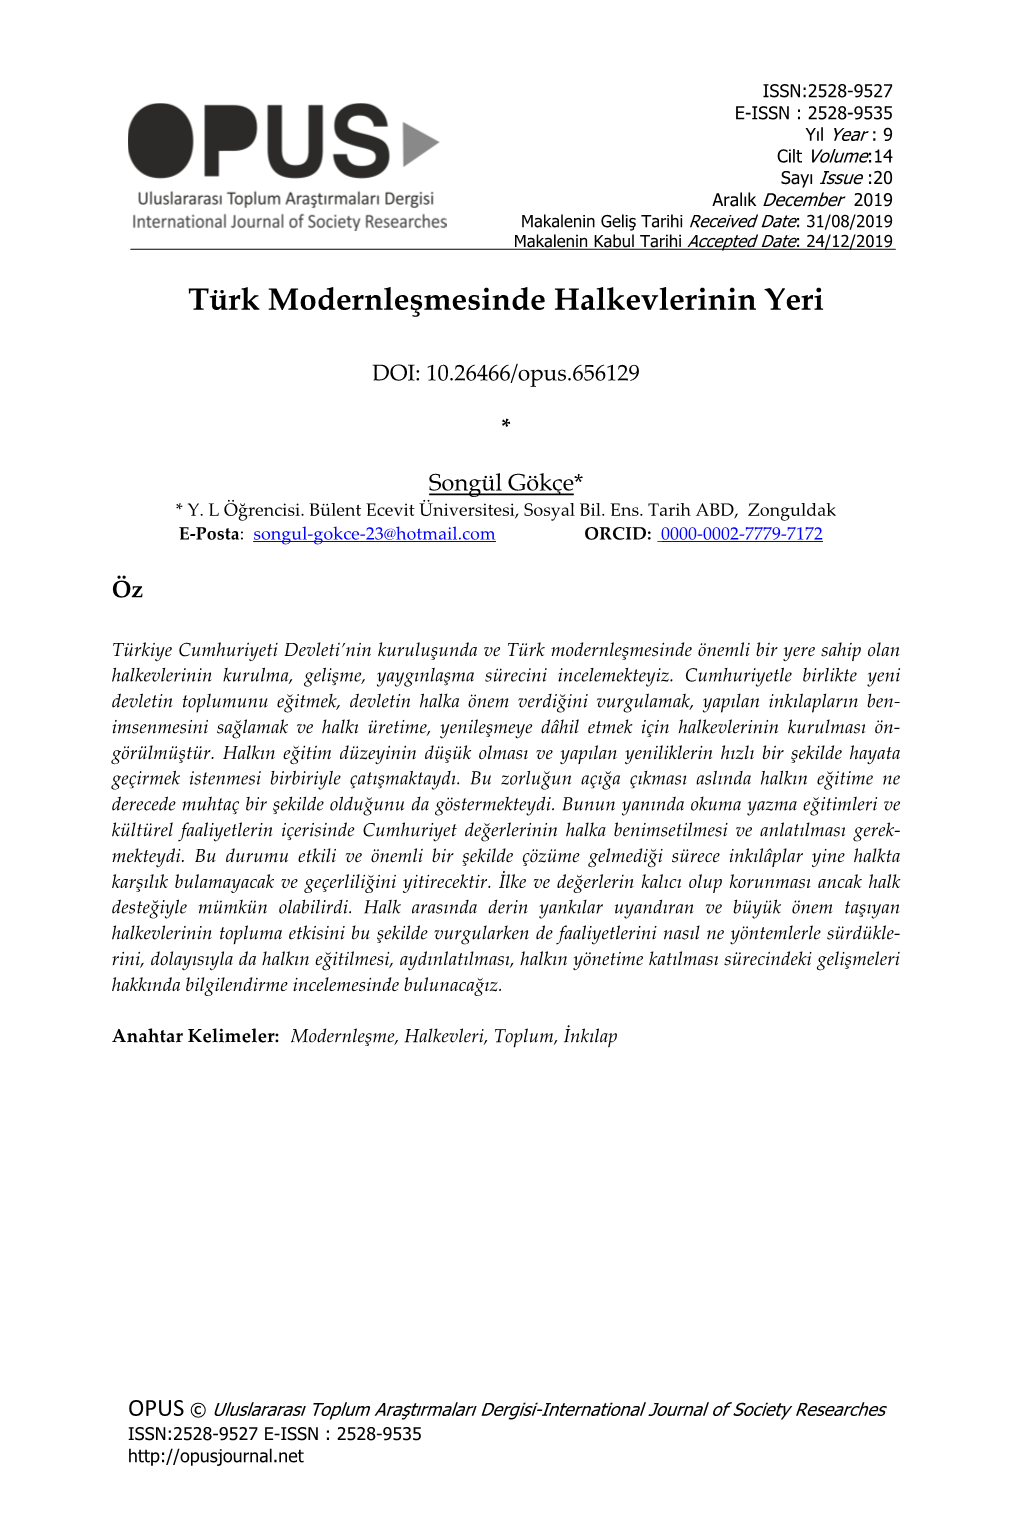 Türk Modernleşmesinde Halkevlerinin Yeri